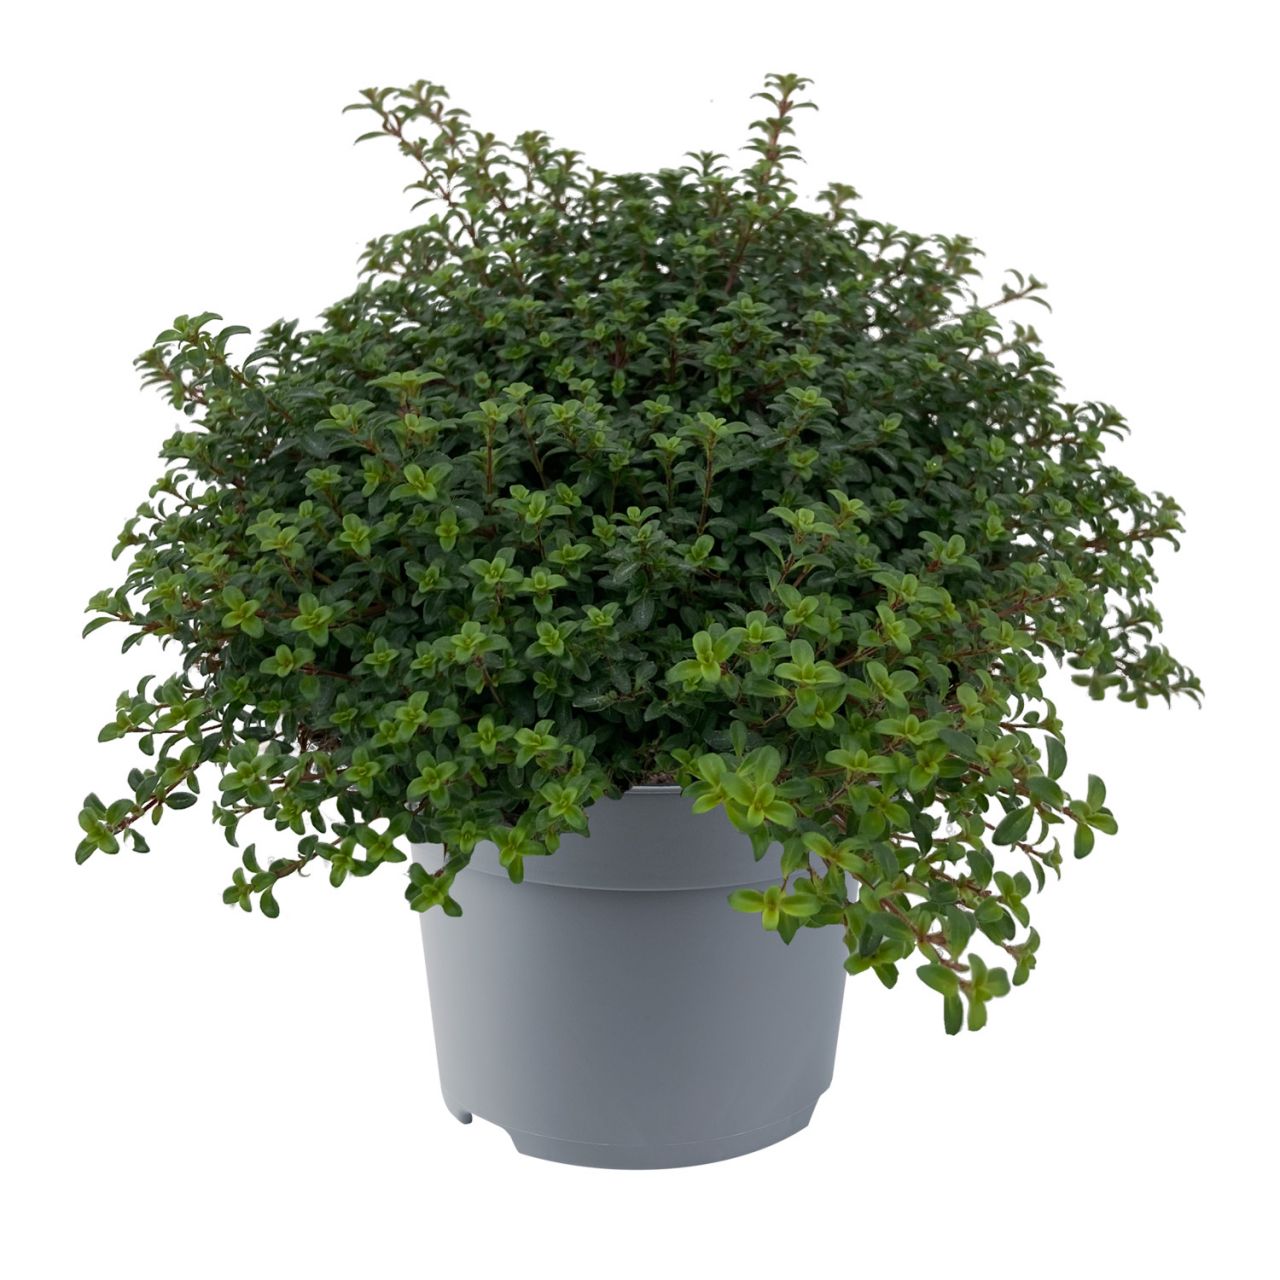 Kategorie <b>Kräuter- und Teepflanzen </b> - Frühblühender Thymian 'Red Carpet' - Thymus praecox 'Red Carpet'